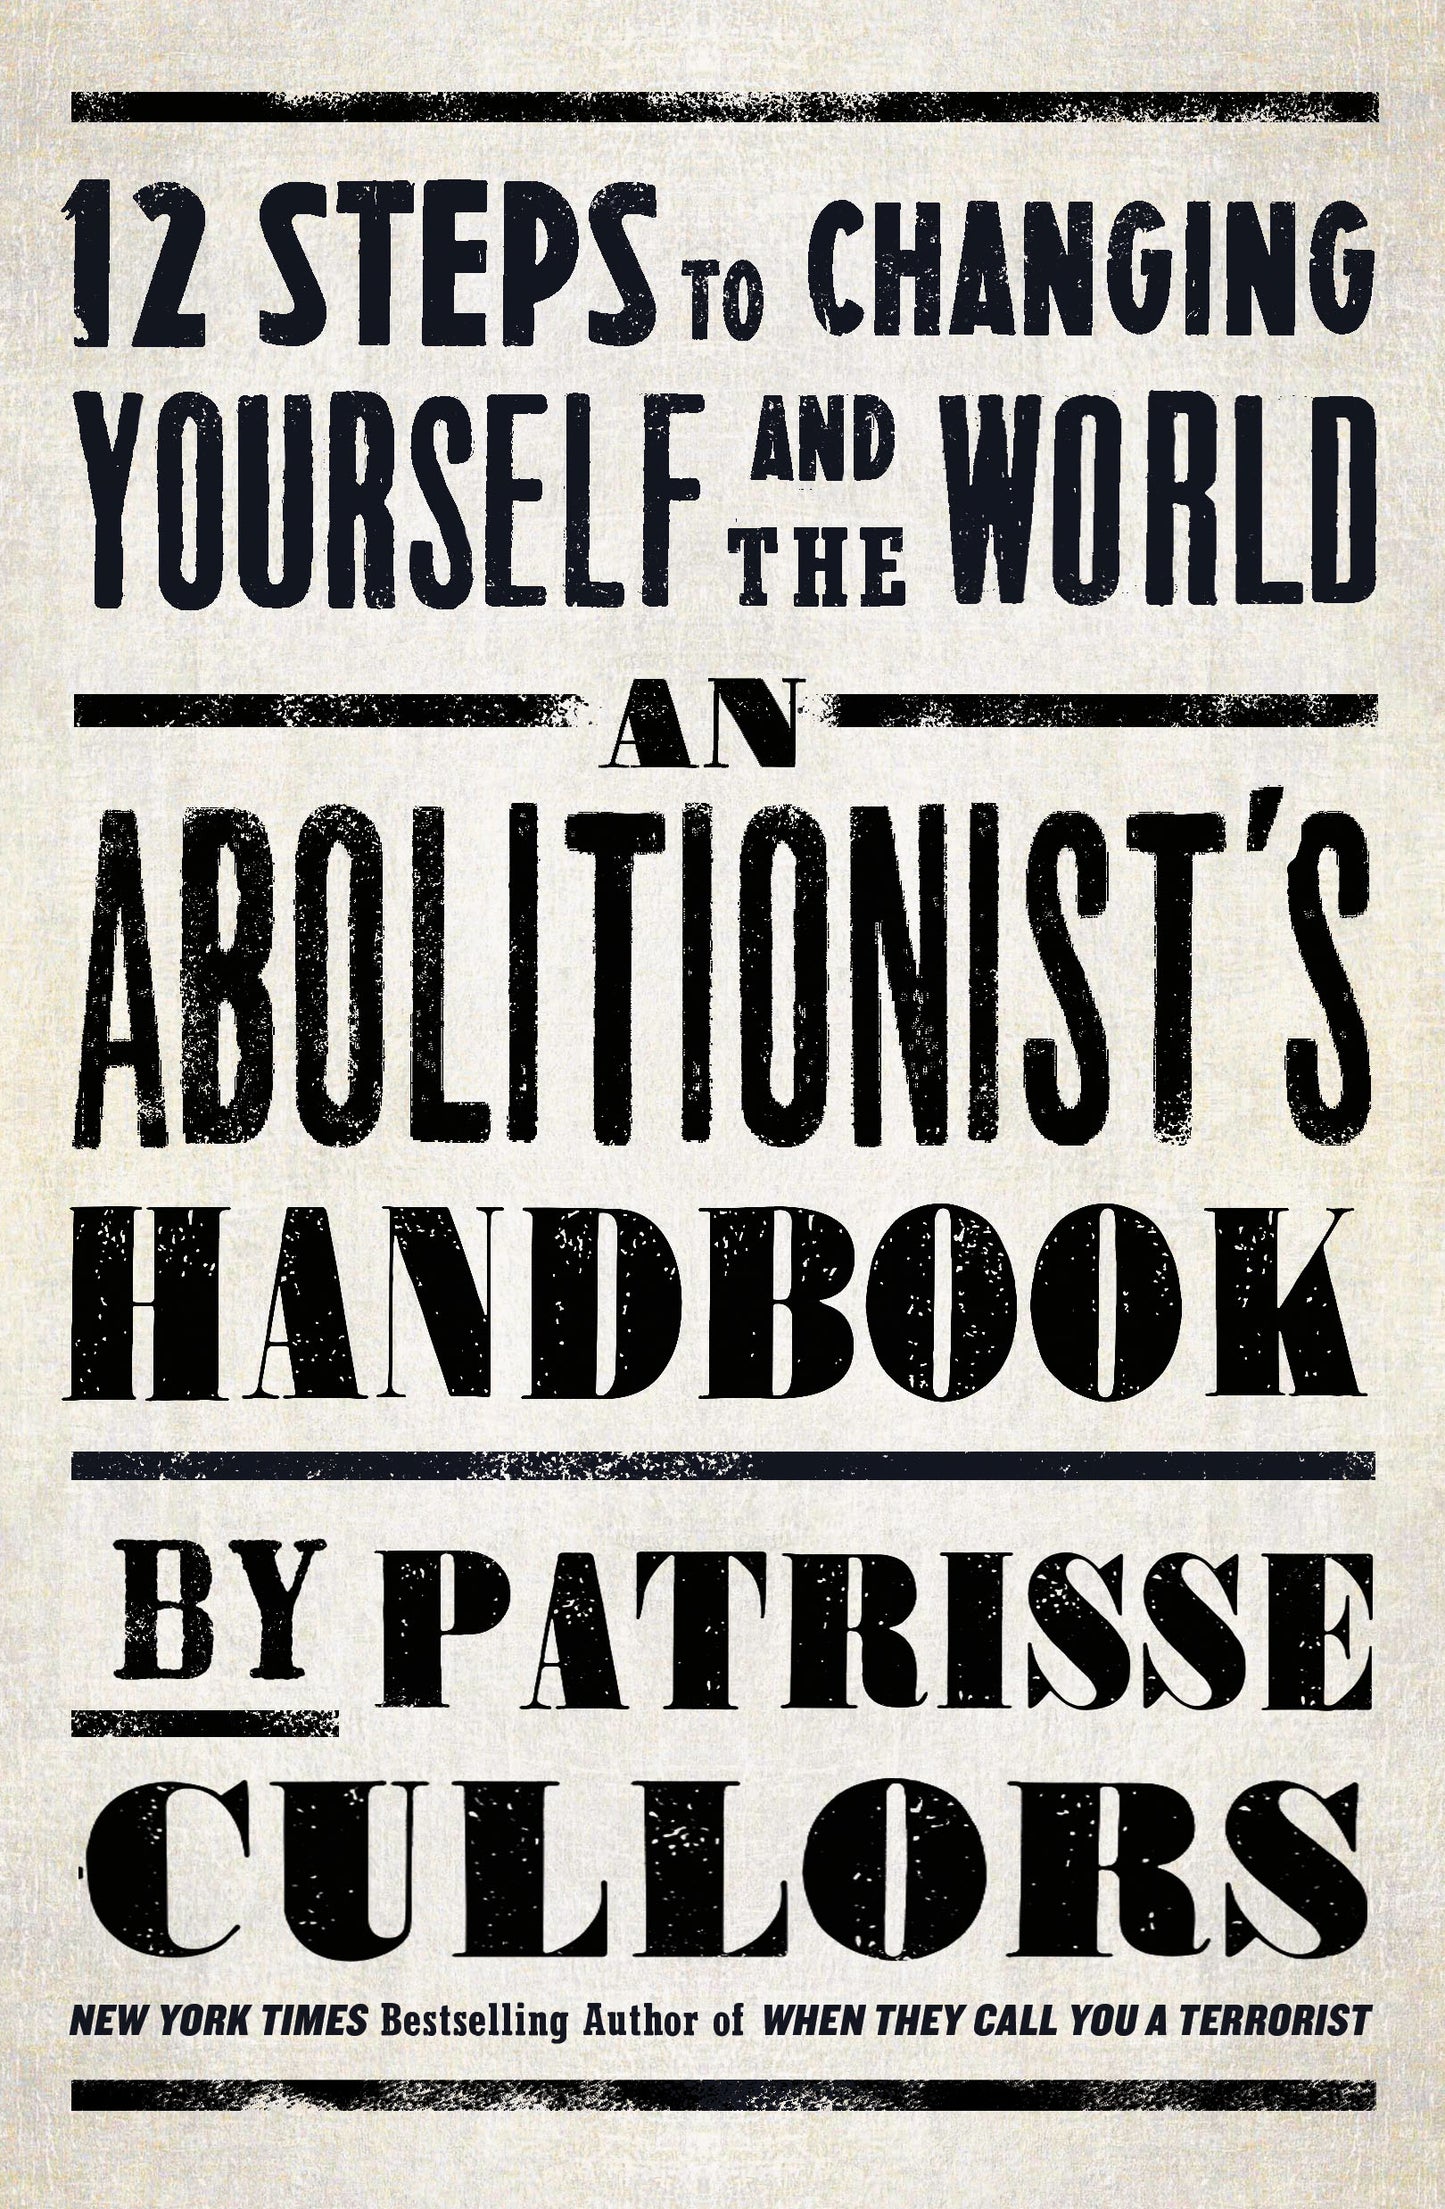 The Abolitionist's Handbook